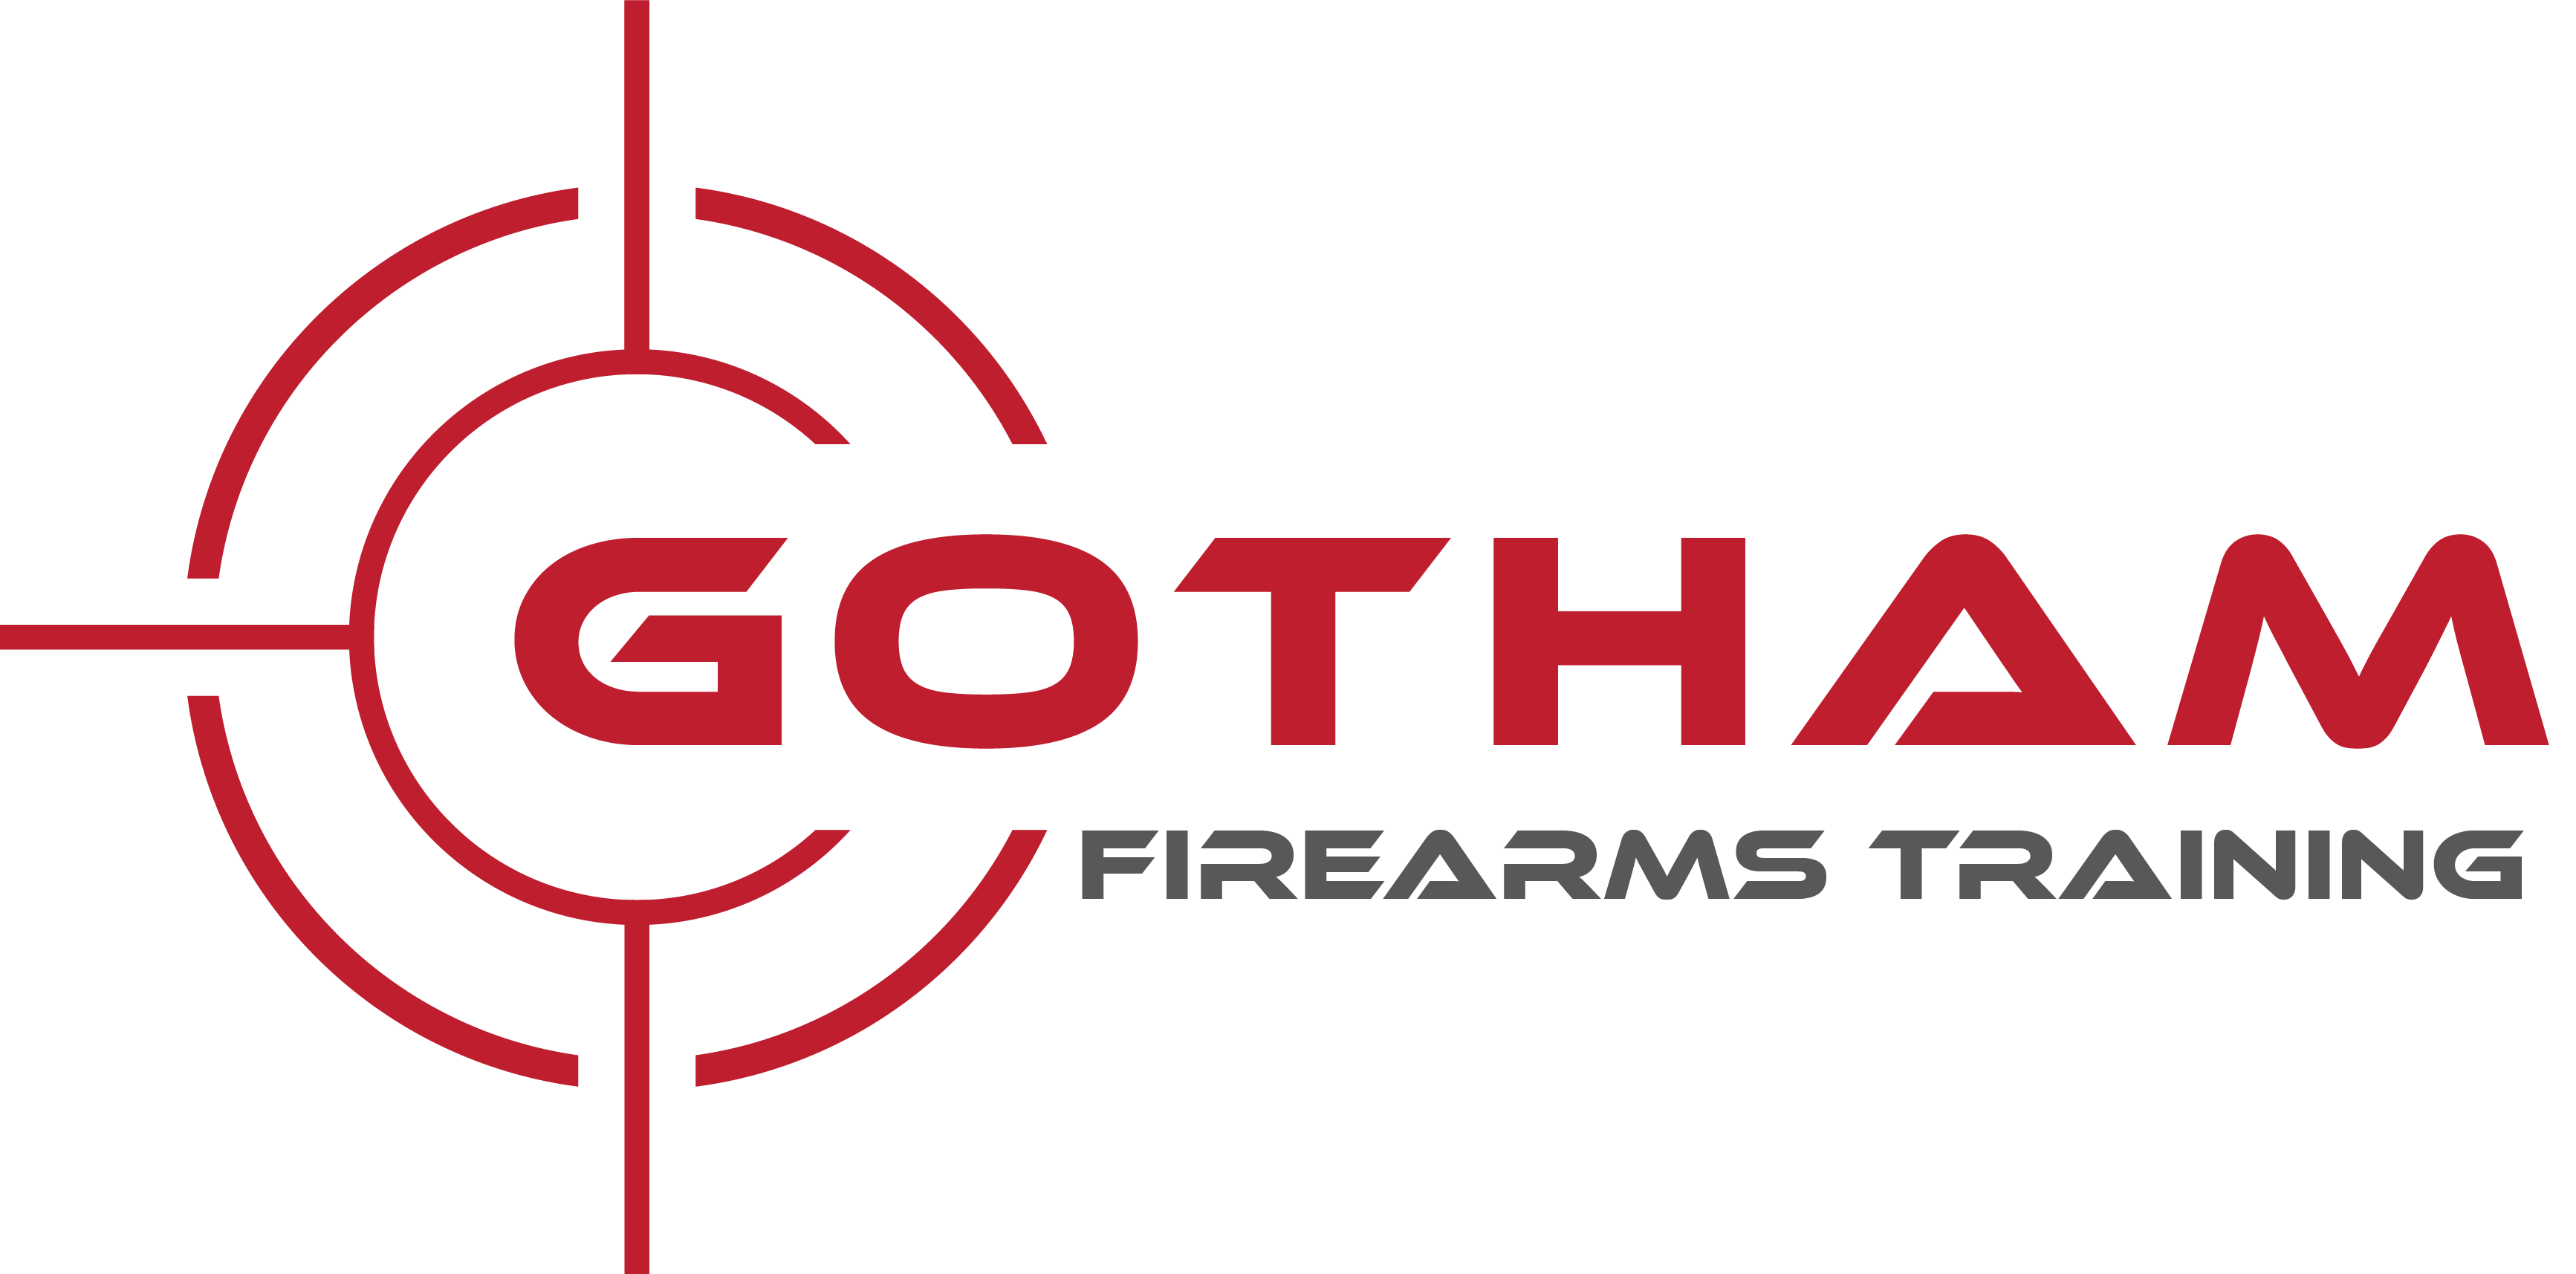 Gotham Firearms Training